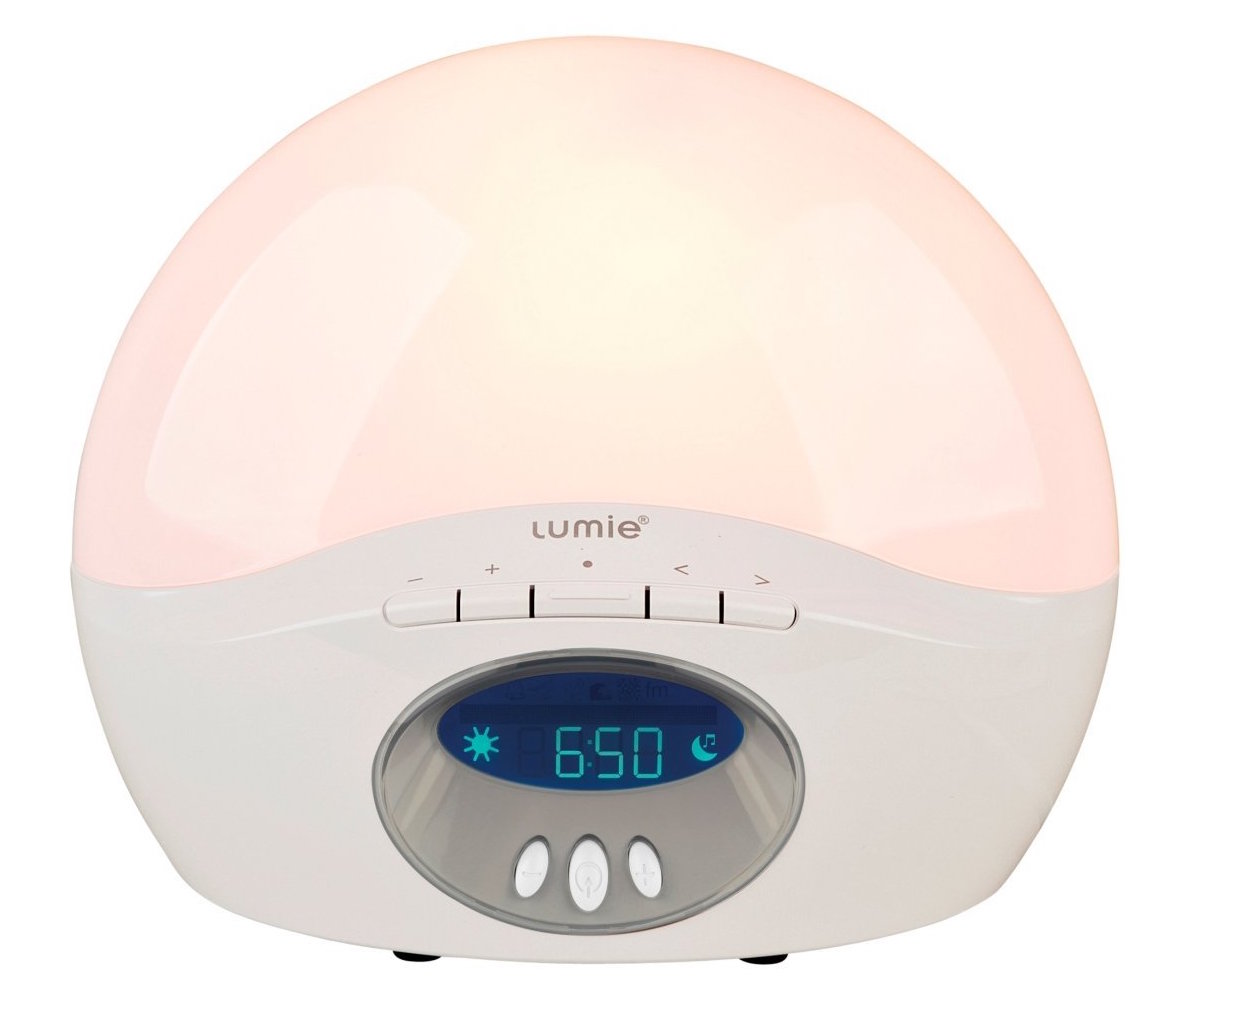  lumie 250 alarm clock review